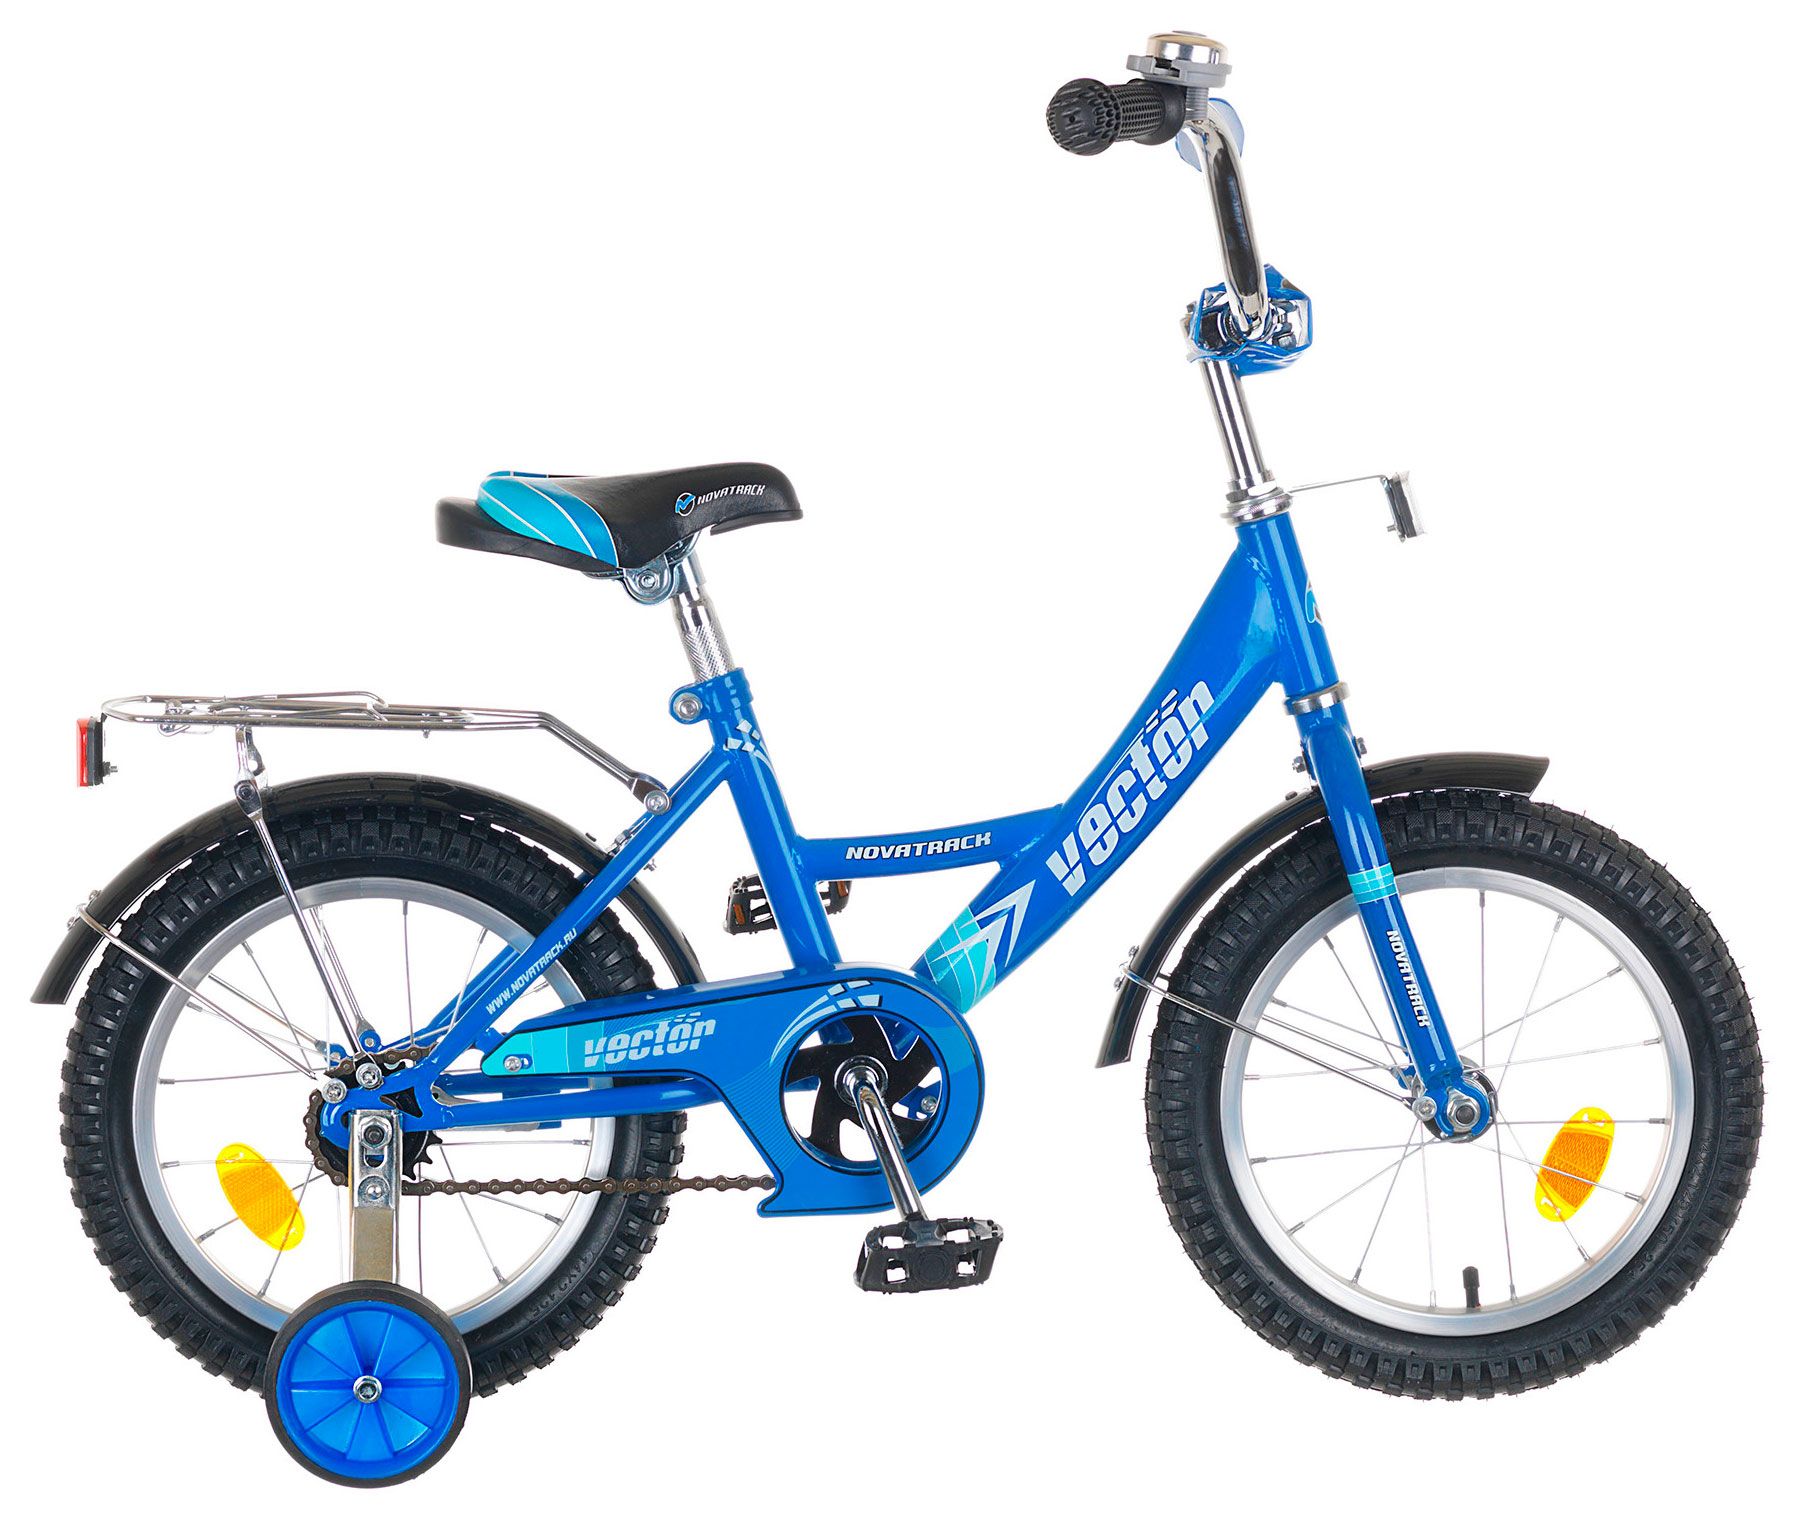  Отзывы о Трехколесный детский велосипед Novatrack Vector 14 2018